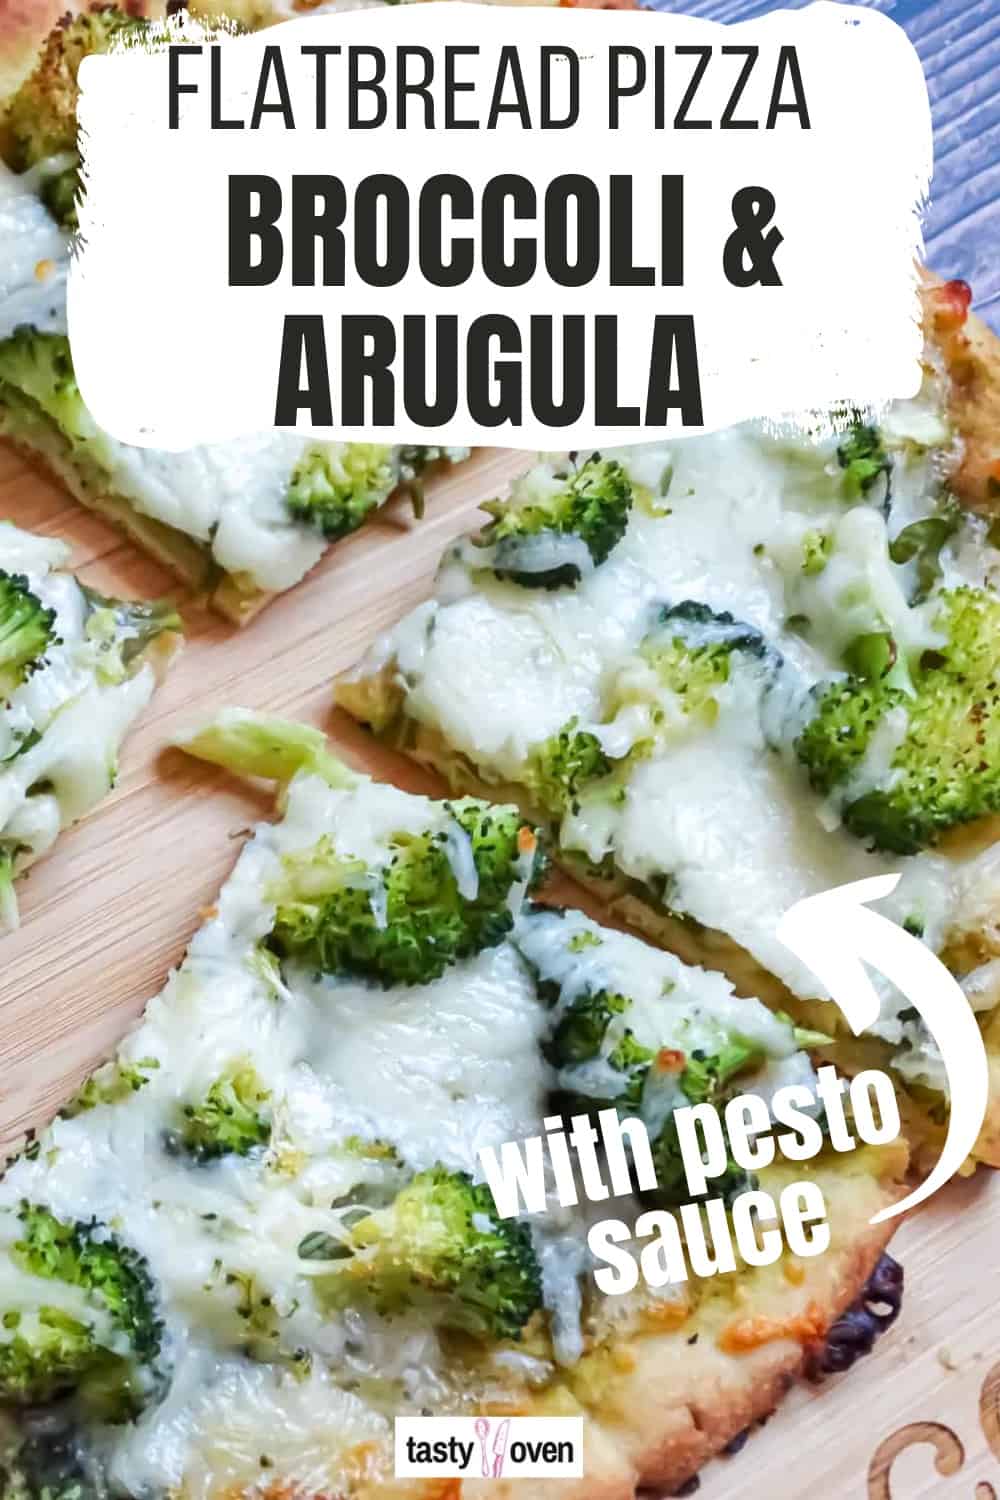 Green Pizza with Broccoli,  Arugula, and Pesto